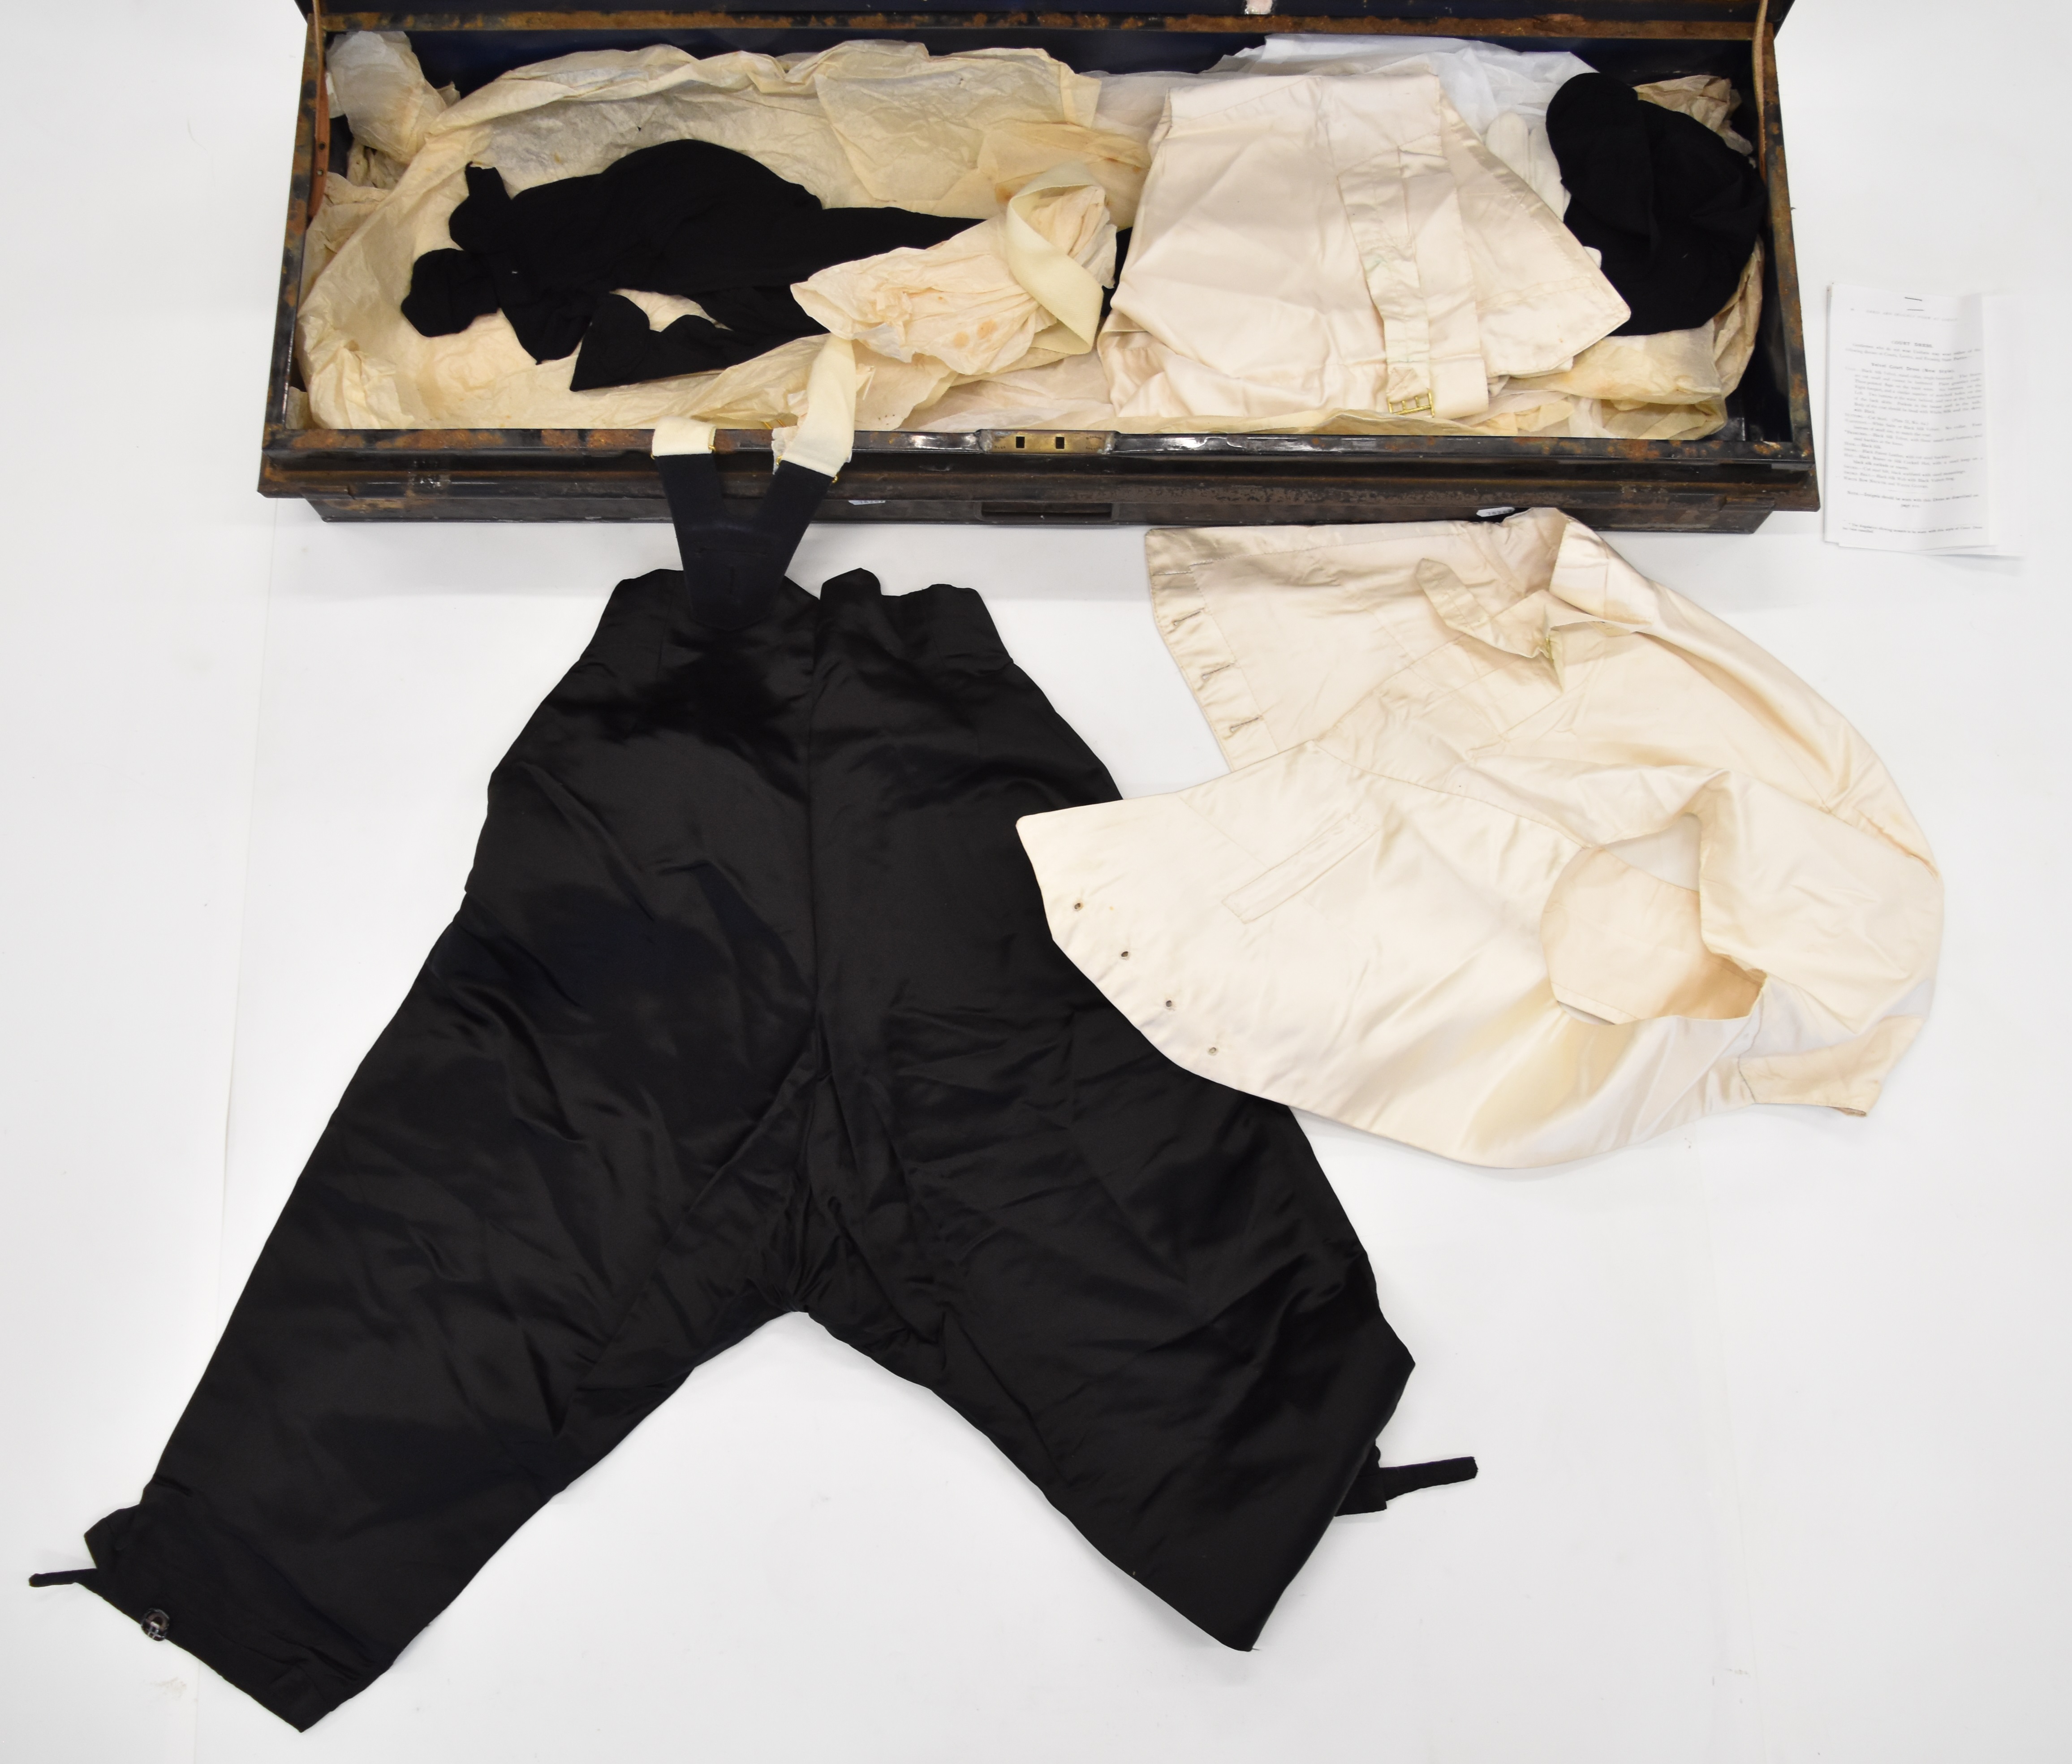 Early 20thC High Sheriff's uniform comprising black velvet coat, velvet breeches and waistcoat, - Image 19 of 20